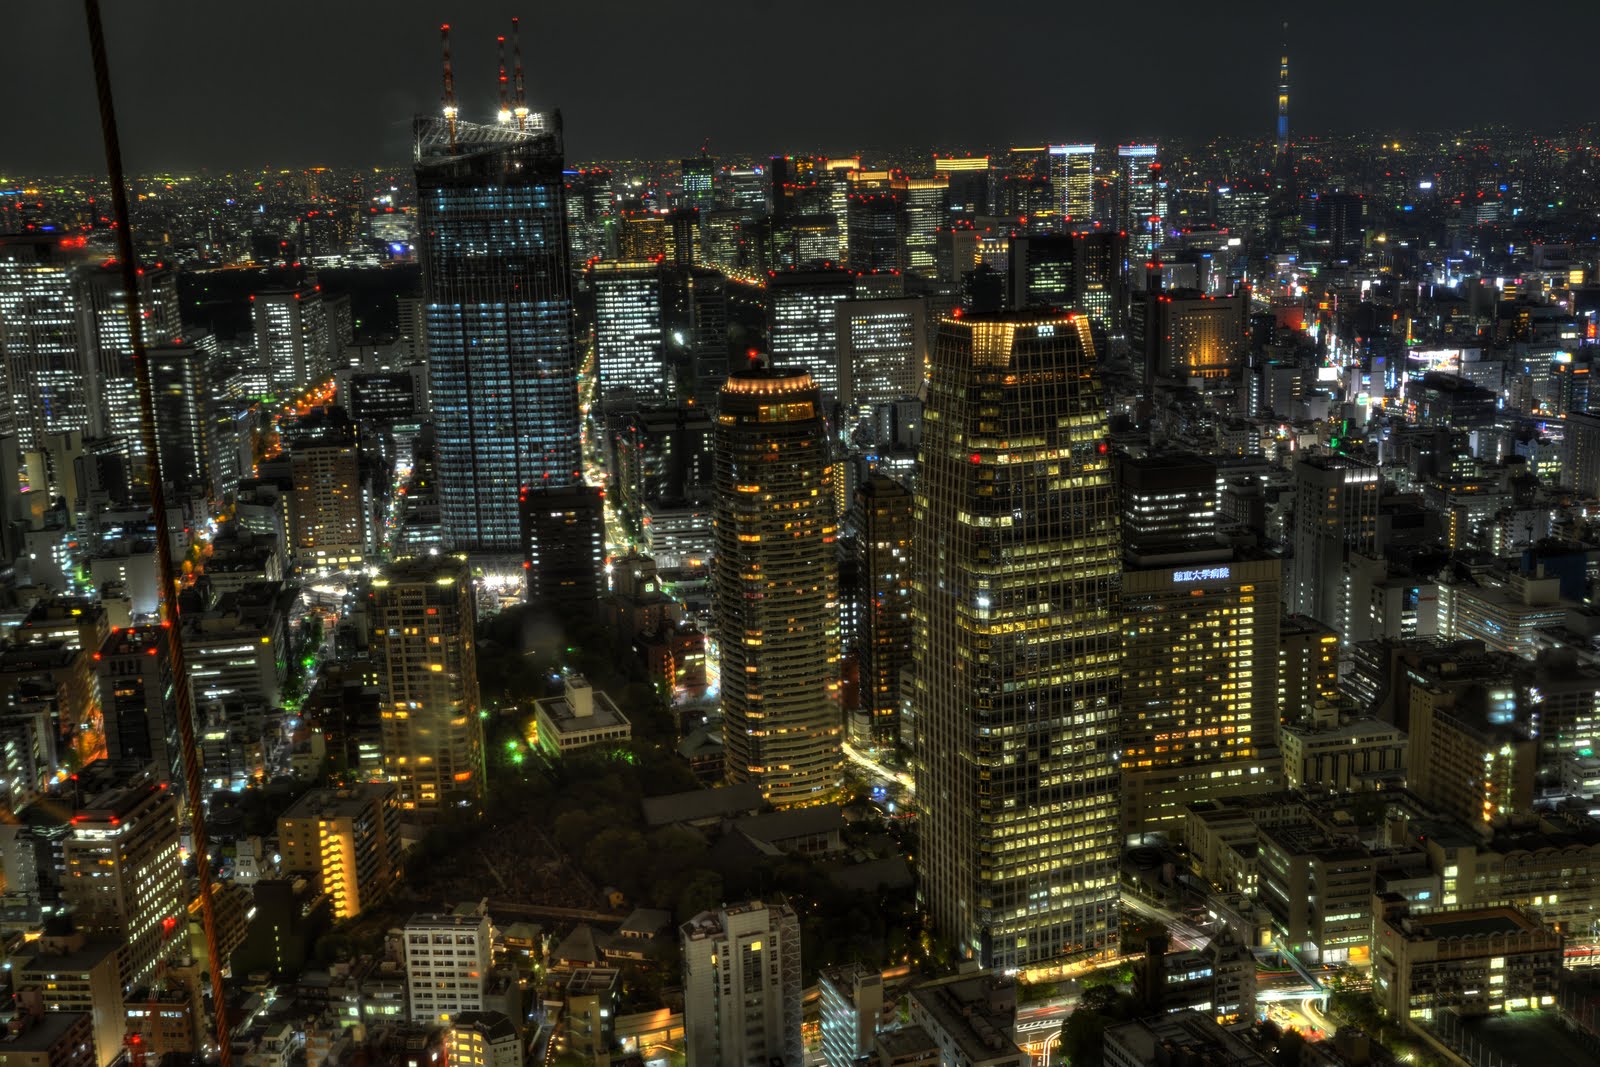 Hdrts Hdr Tiltshift 東京タワー特別展望台からの夜景